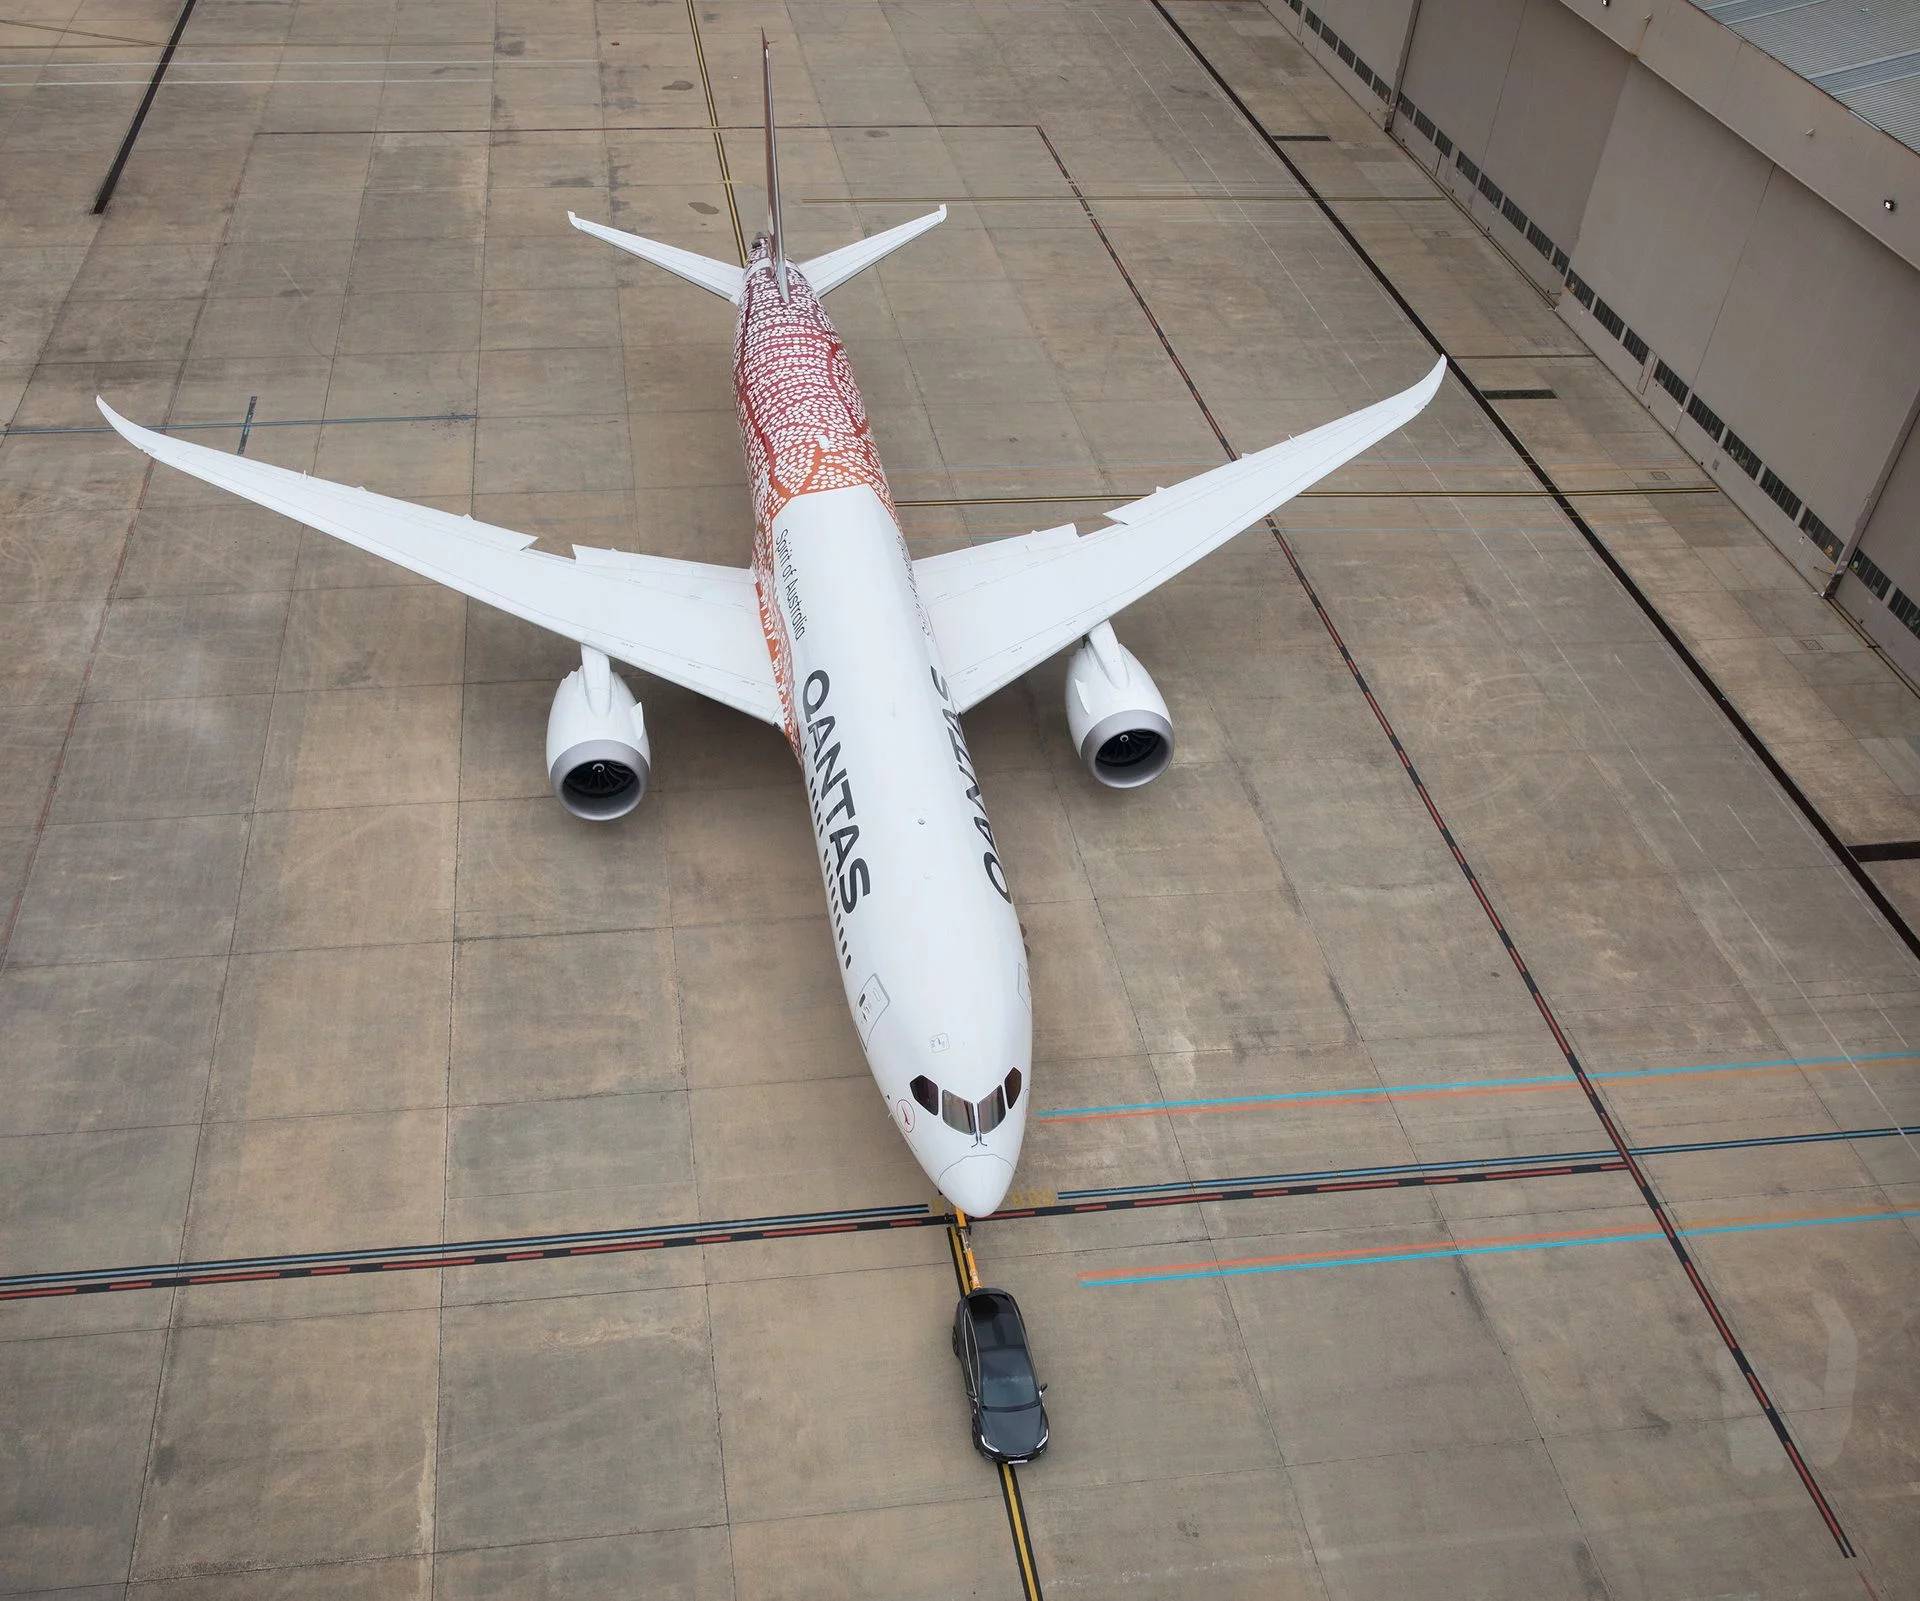 شاهد تيسلا موديل X تسحب طائرة بوينغ عملاقة تزن 130 طن! 7